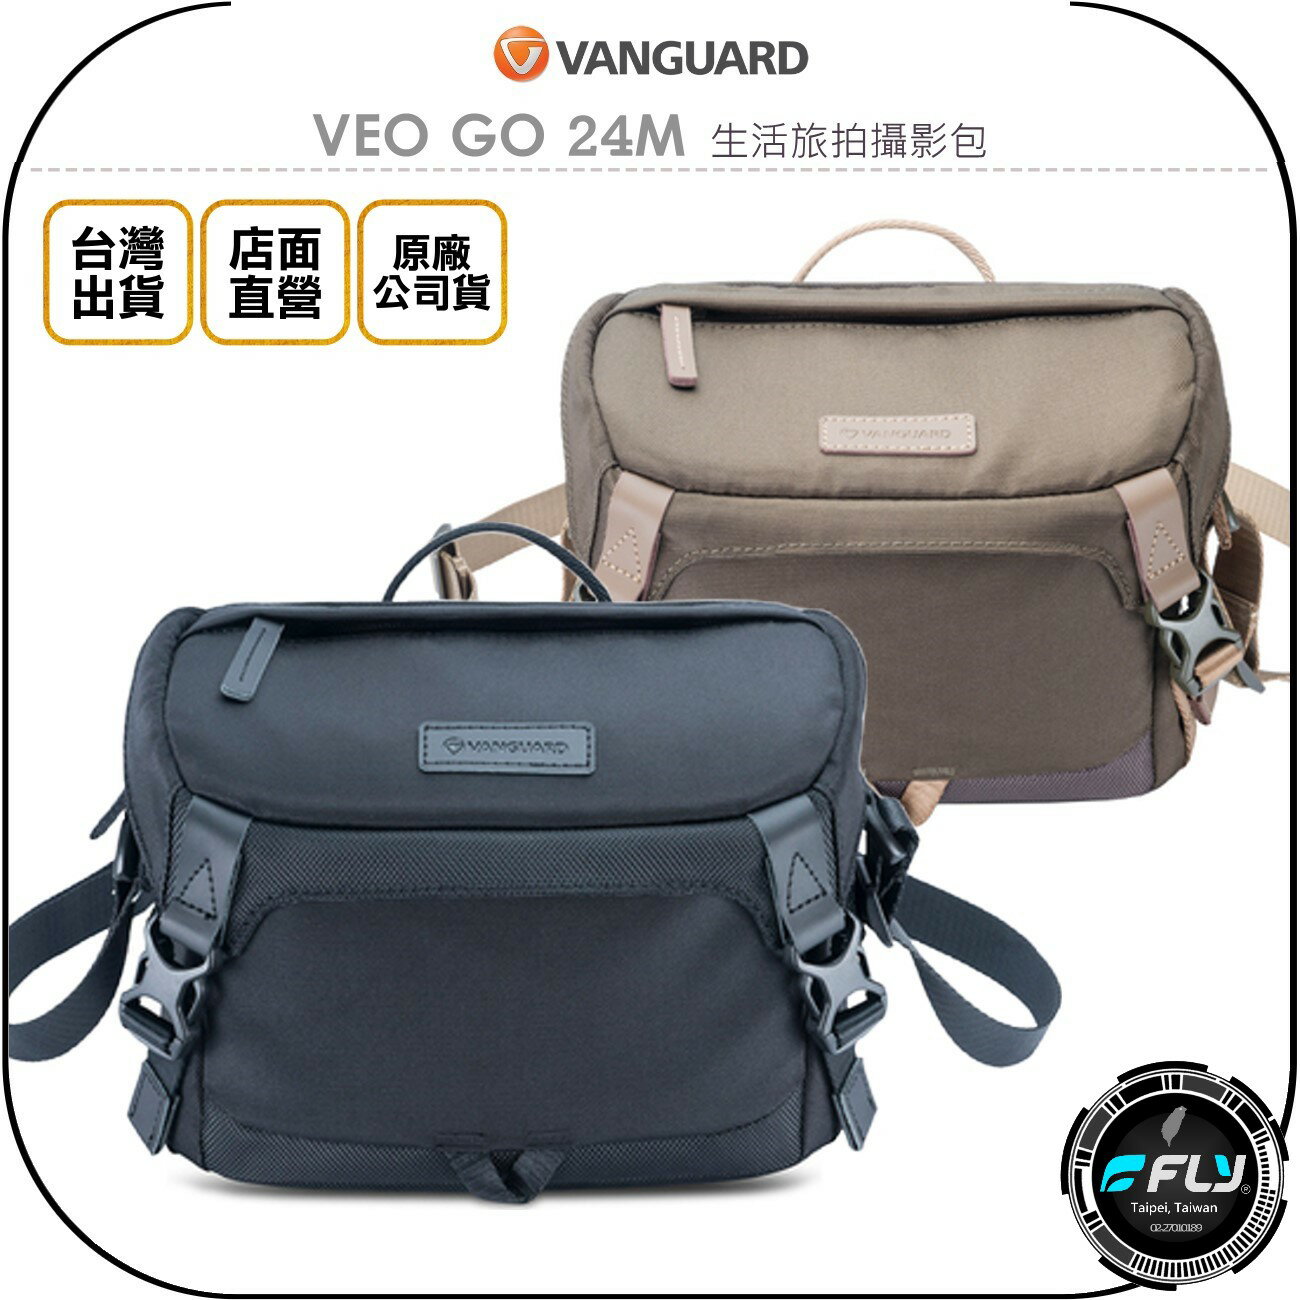 《飛翔無線3C》VANGUARD 精嘉 VEO GO 24M 生活旅拍攝影包◉公司貨◉單眼側背包◉相機斜背包